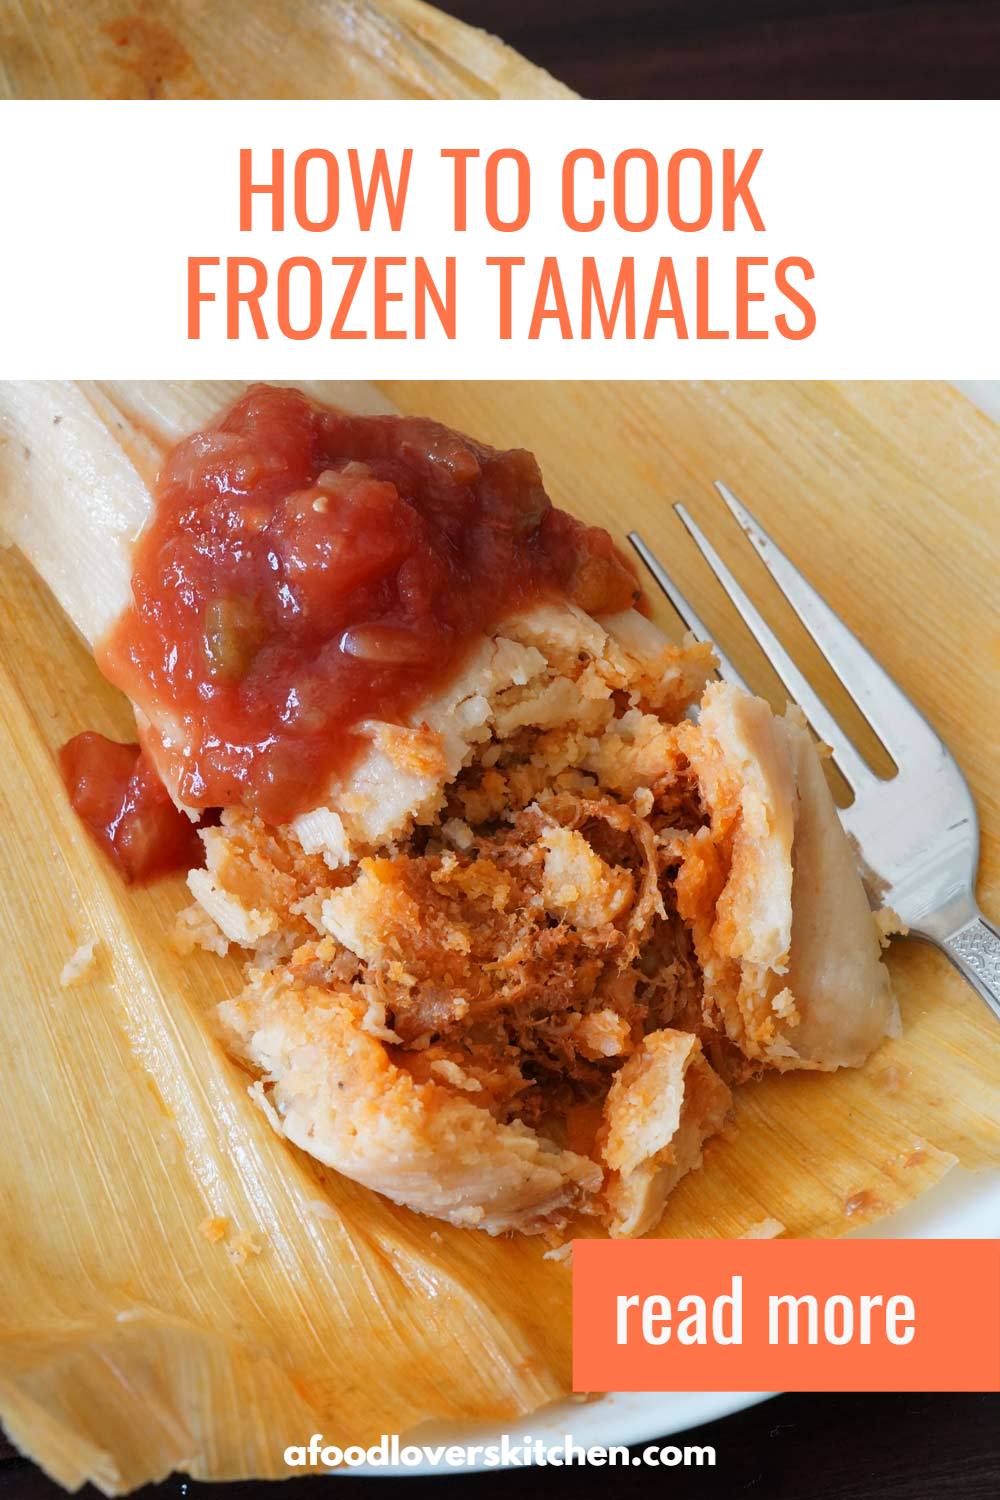 https://afoodloverskitchen.com/wp-content/uploads/cook-frozen-tamales-pin1.jpg